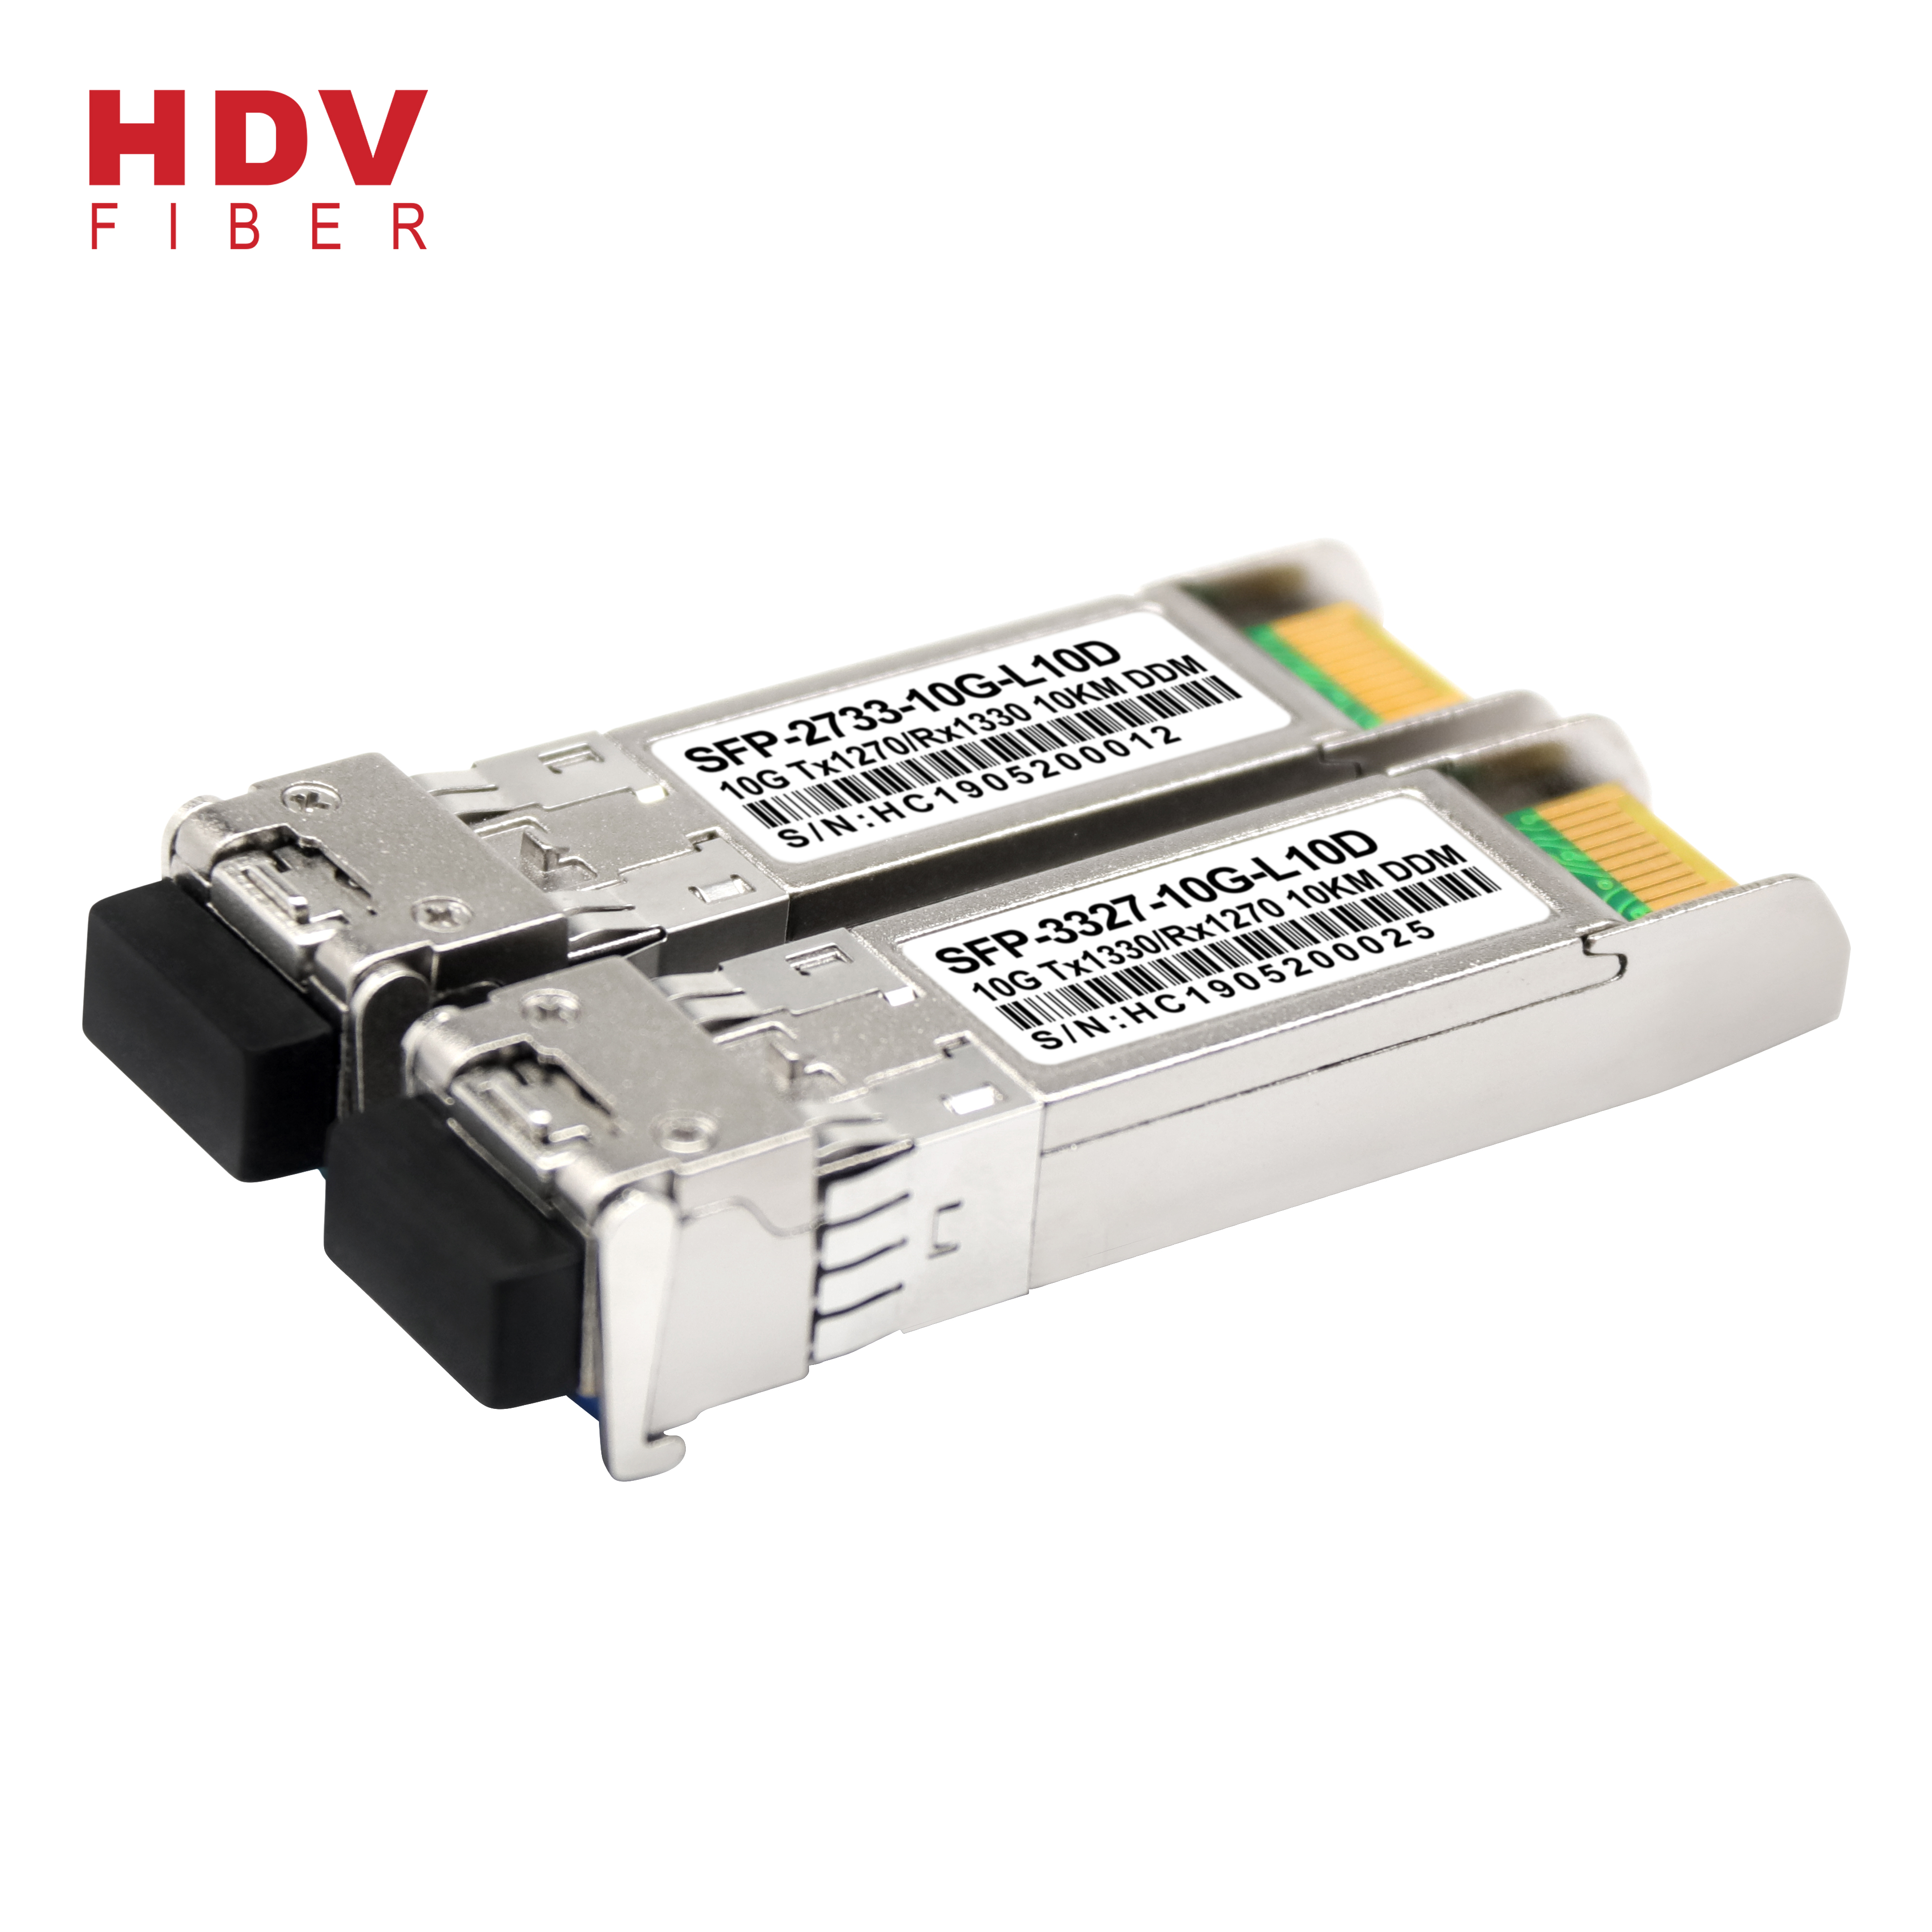 High Quality Sfp Double Fiber Transceivers - 10g bidi sfp 10km 1330 1270 optical fiber transceiver sfp module – HDV